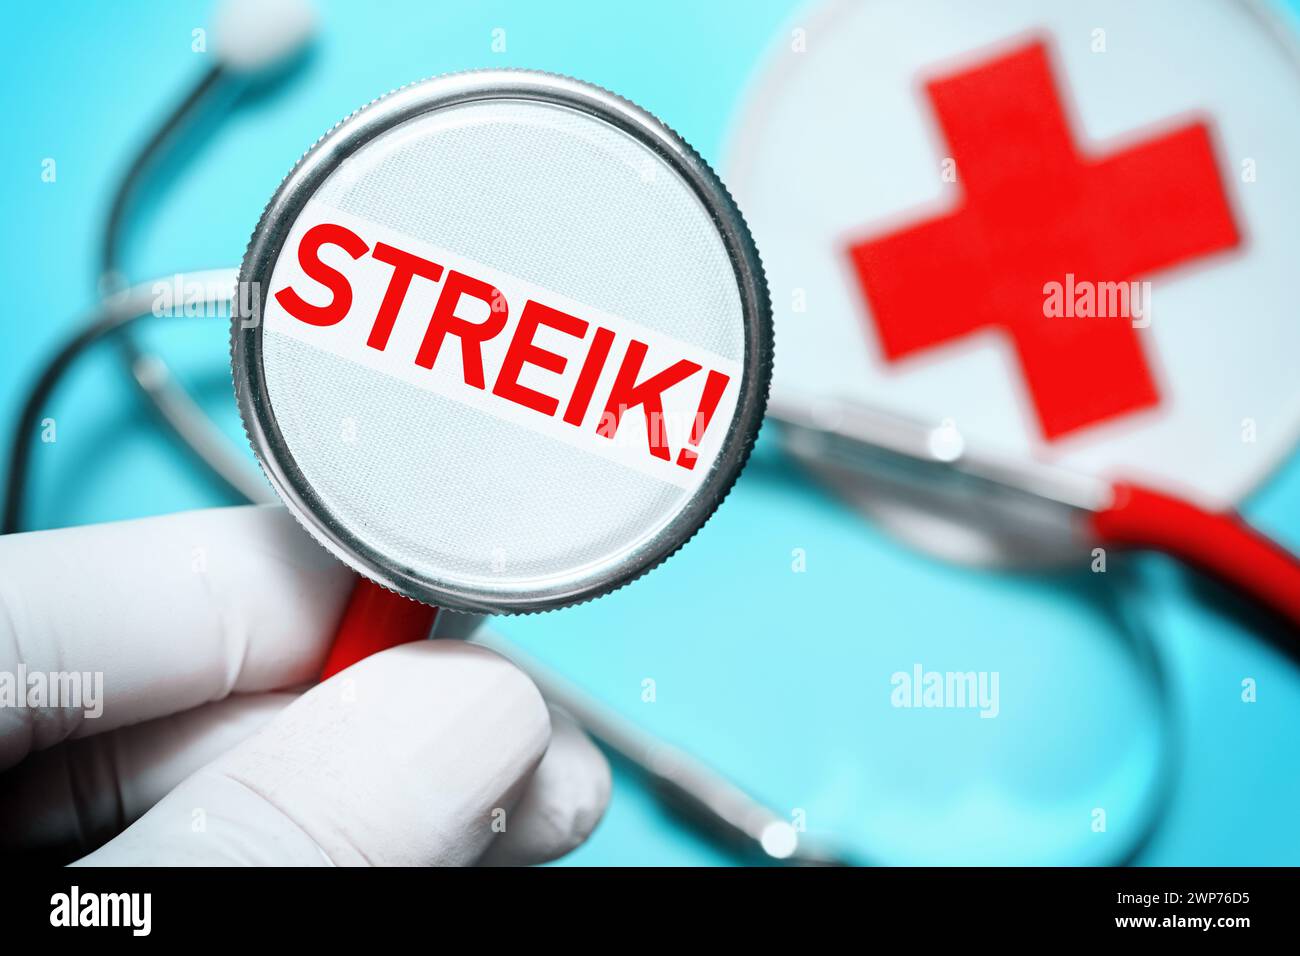 FOTONTAGE, Hand hält Stethoskop mit Aufschrift Streik!, Symbolfoto Ärztestreik Banque D'Images